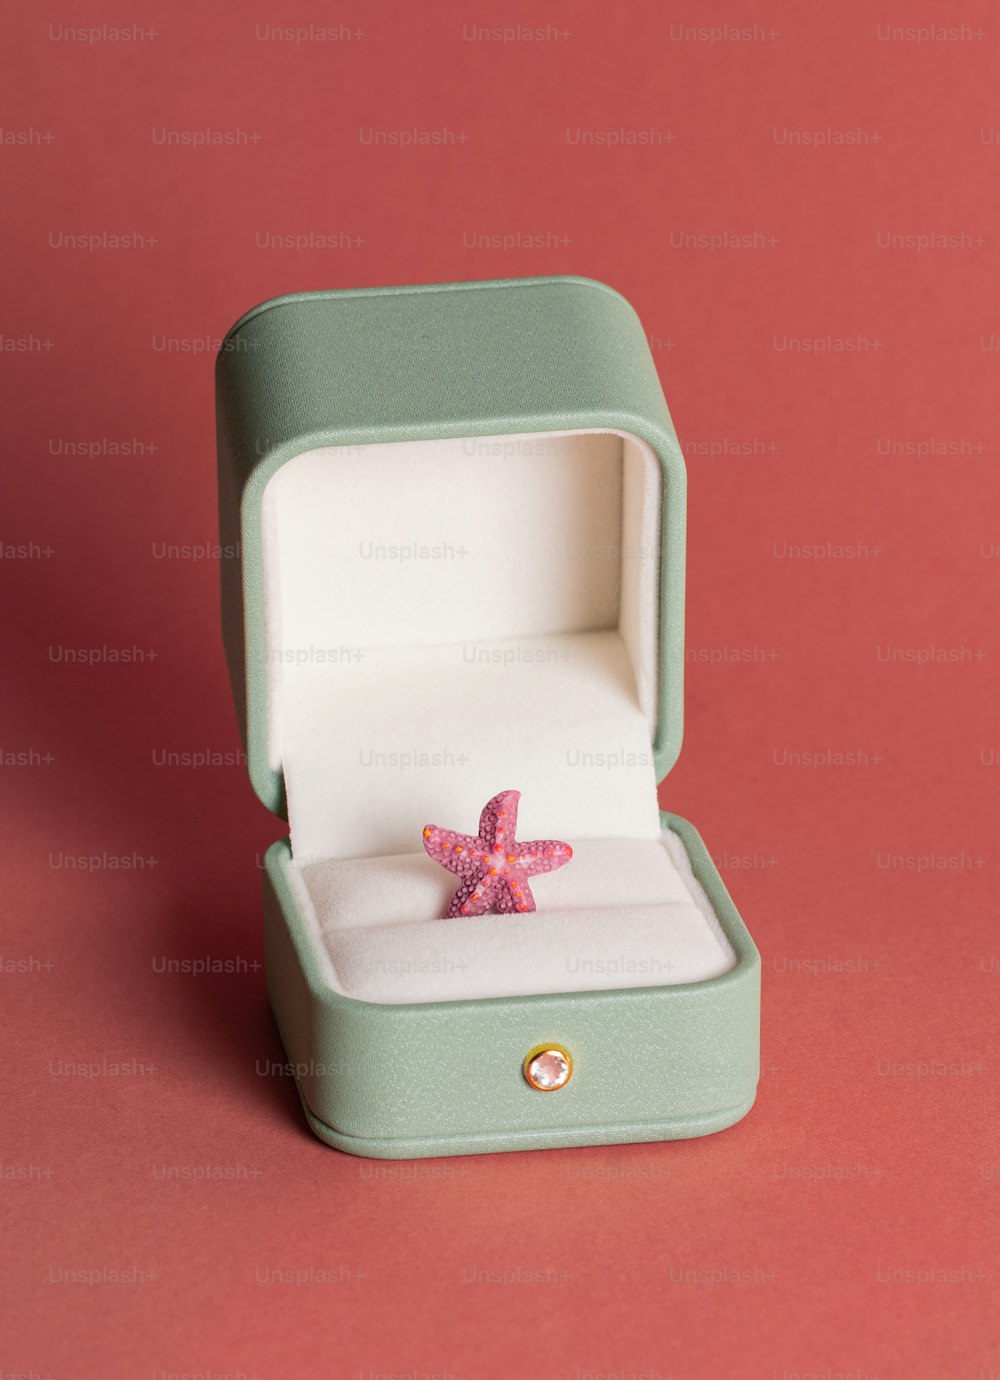 분홍색 배경에 상자에 있는 불가사리 반지